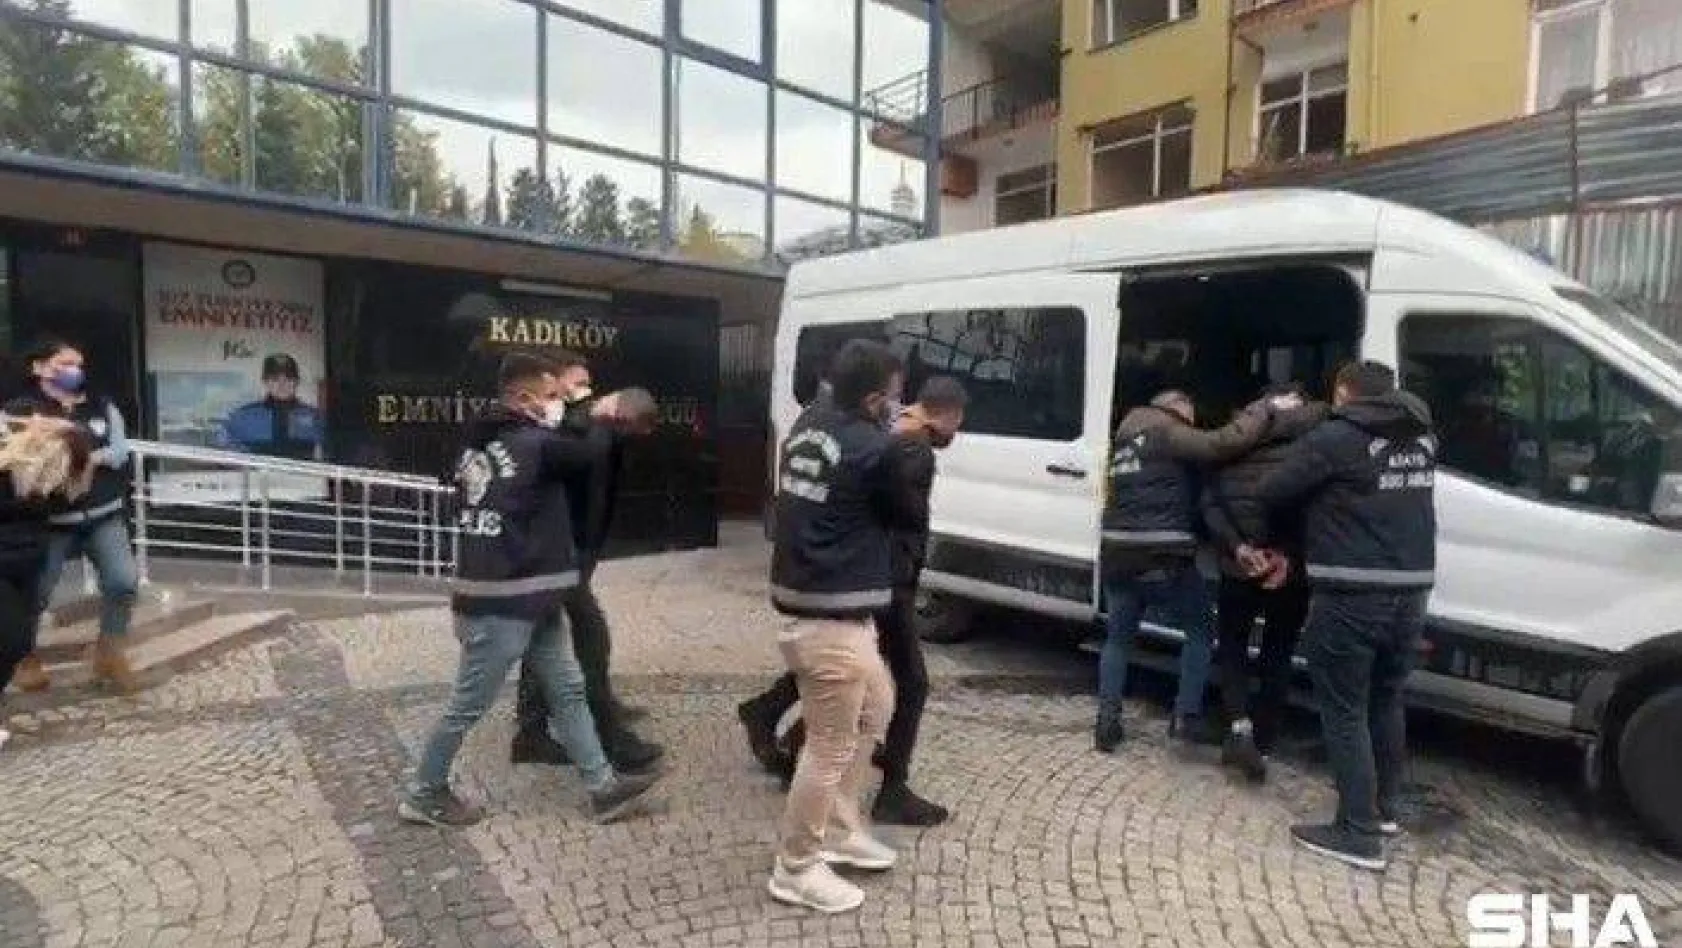 Şırnak'tan gelip Kadıköy'de sokak ortasında 'namus' cinayeti işledi